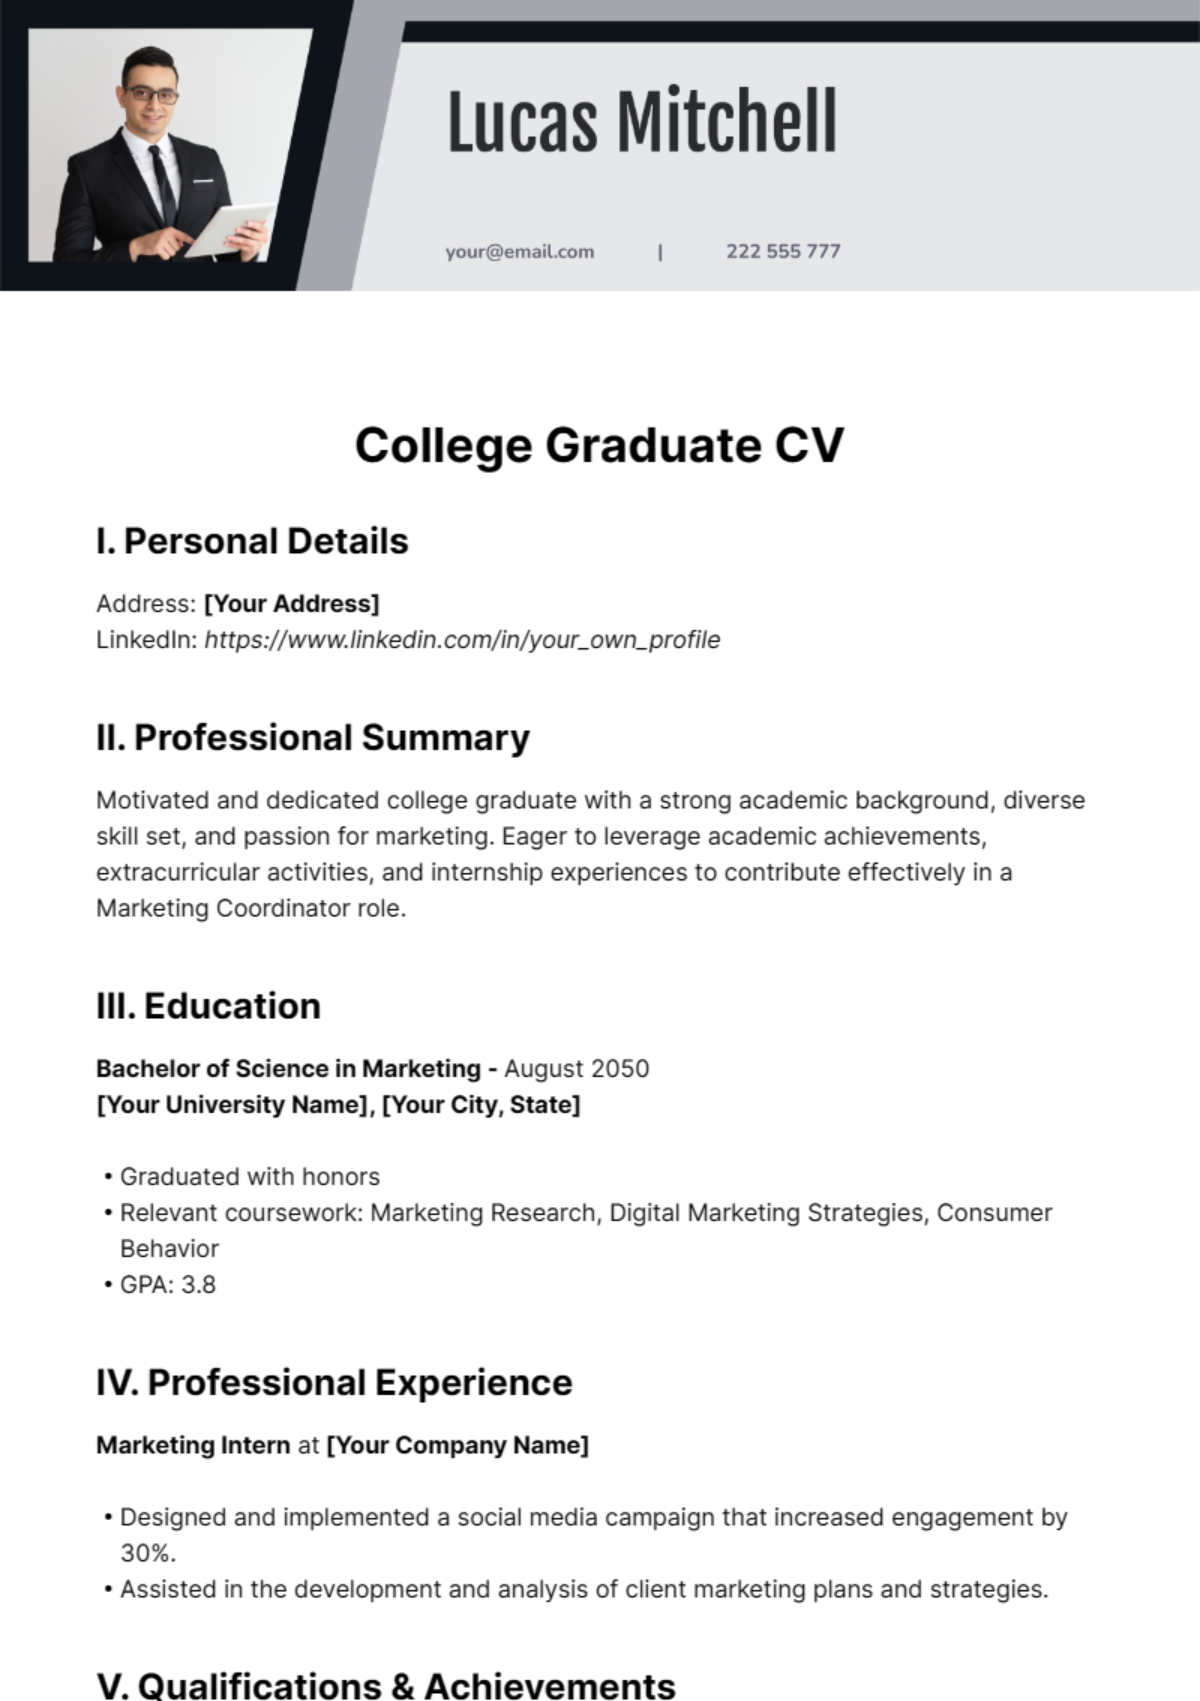 College Graduate CV Template